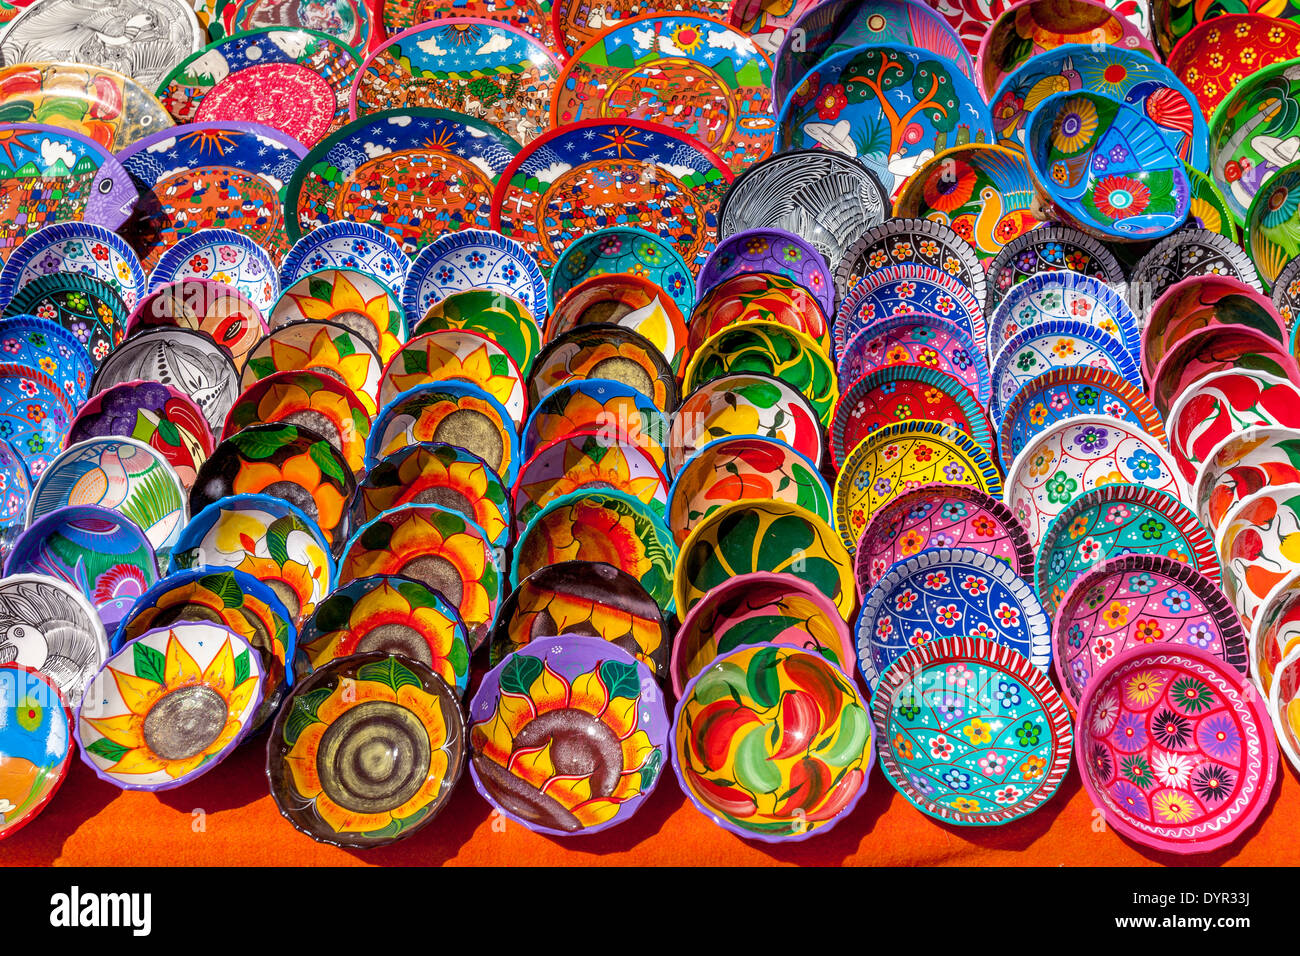 Artigianato colorato per la vendita, Chichen Itza, Yucatan, Messico Foto Stock